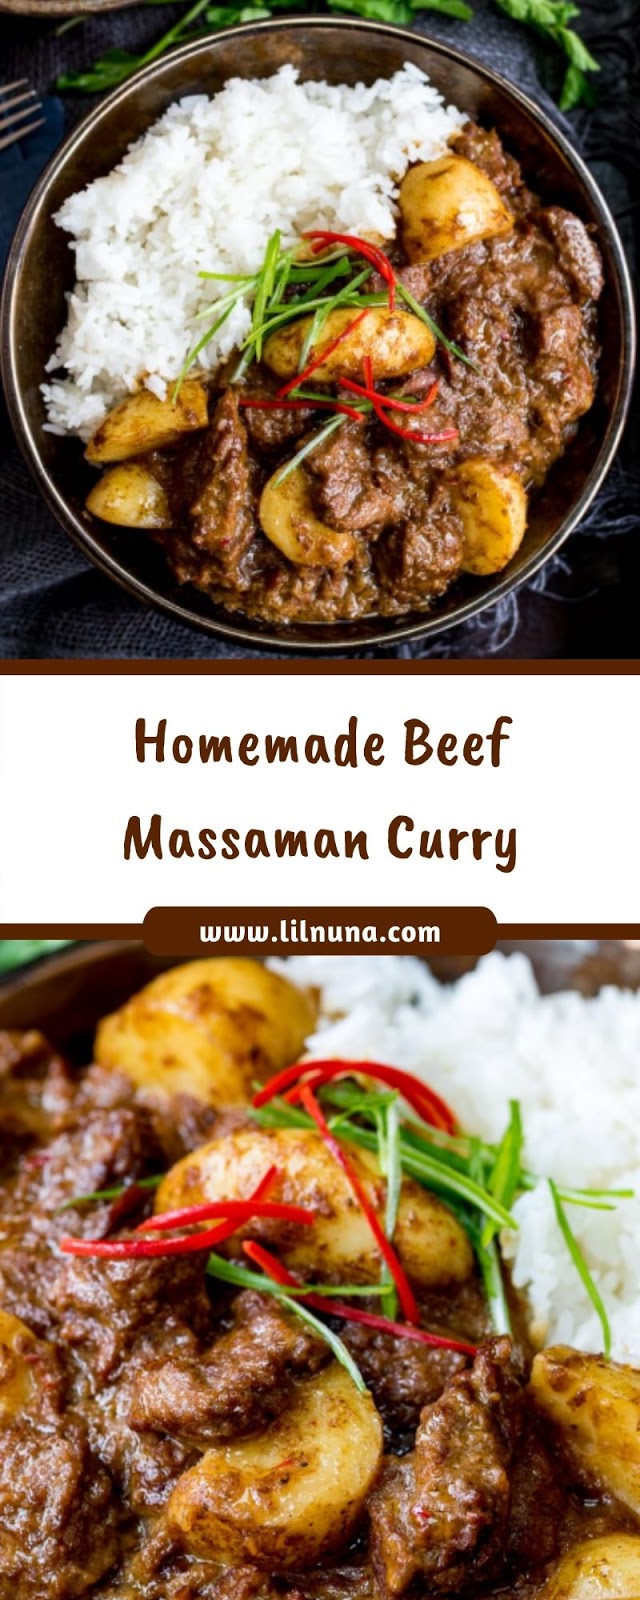 Homemade Beef Massaman Curry